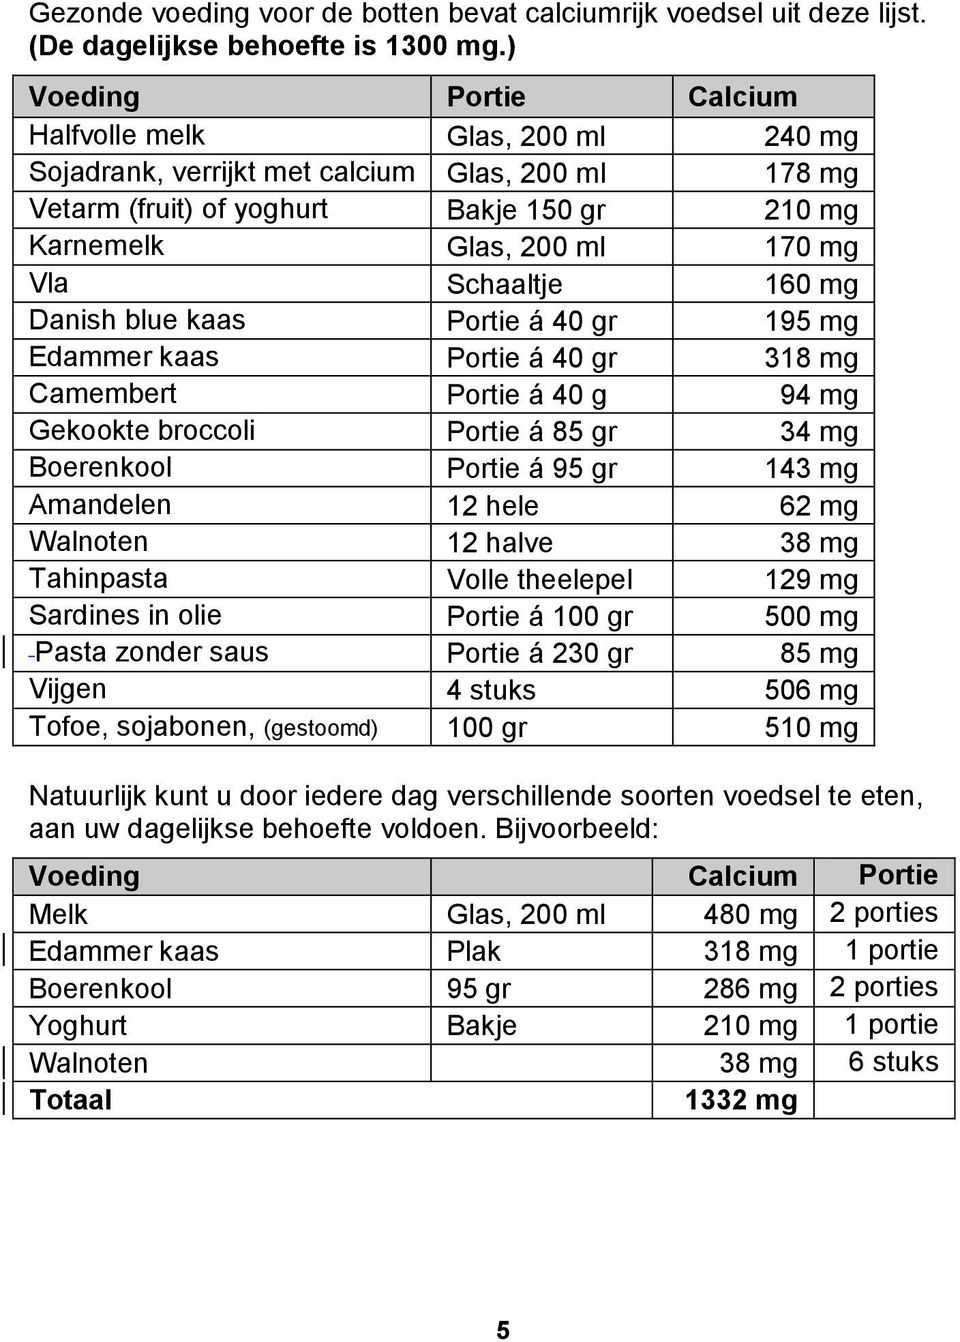 Schaaltje 160 mg Danish blue kaas Portie á 40 gr 195 mg Edammer kaas Portie á 40 gr 318 mg Camembert Portie á 40 g 94 mg Gekookte broccoli Portie á 85 gr 34 mg Boerenkool Portie á 95 gr 143 mg